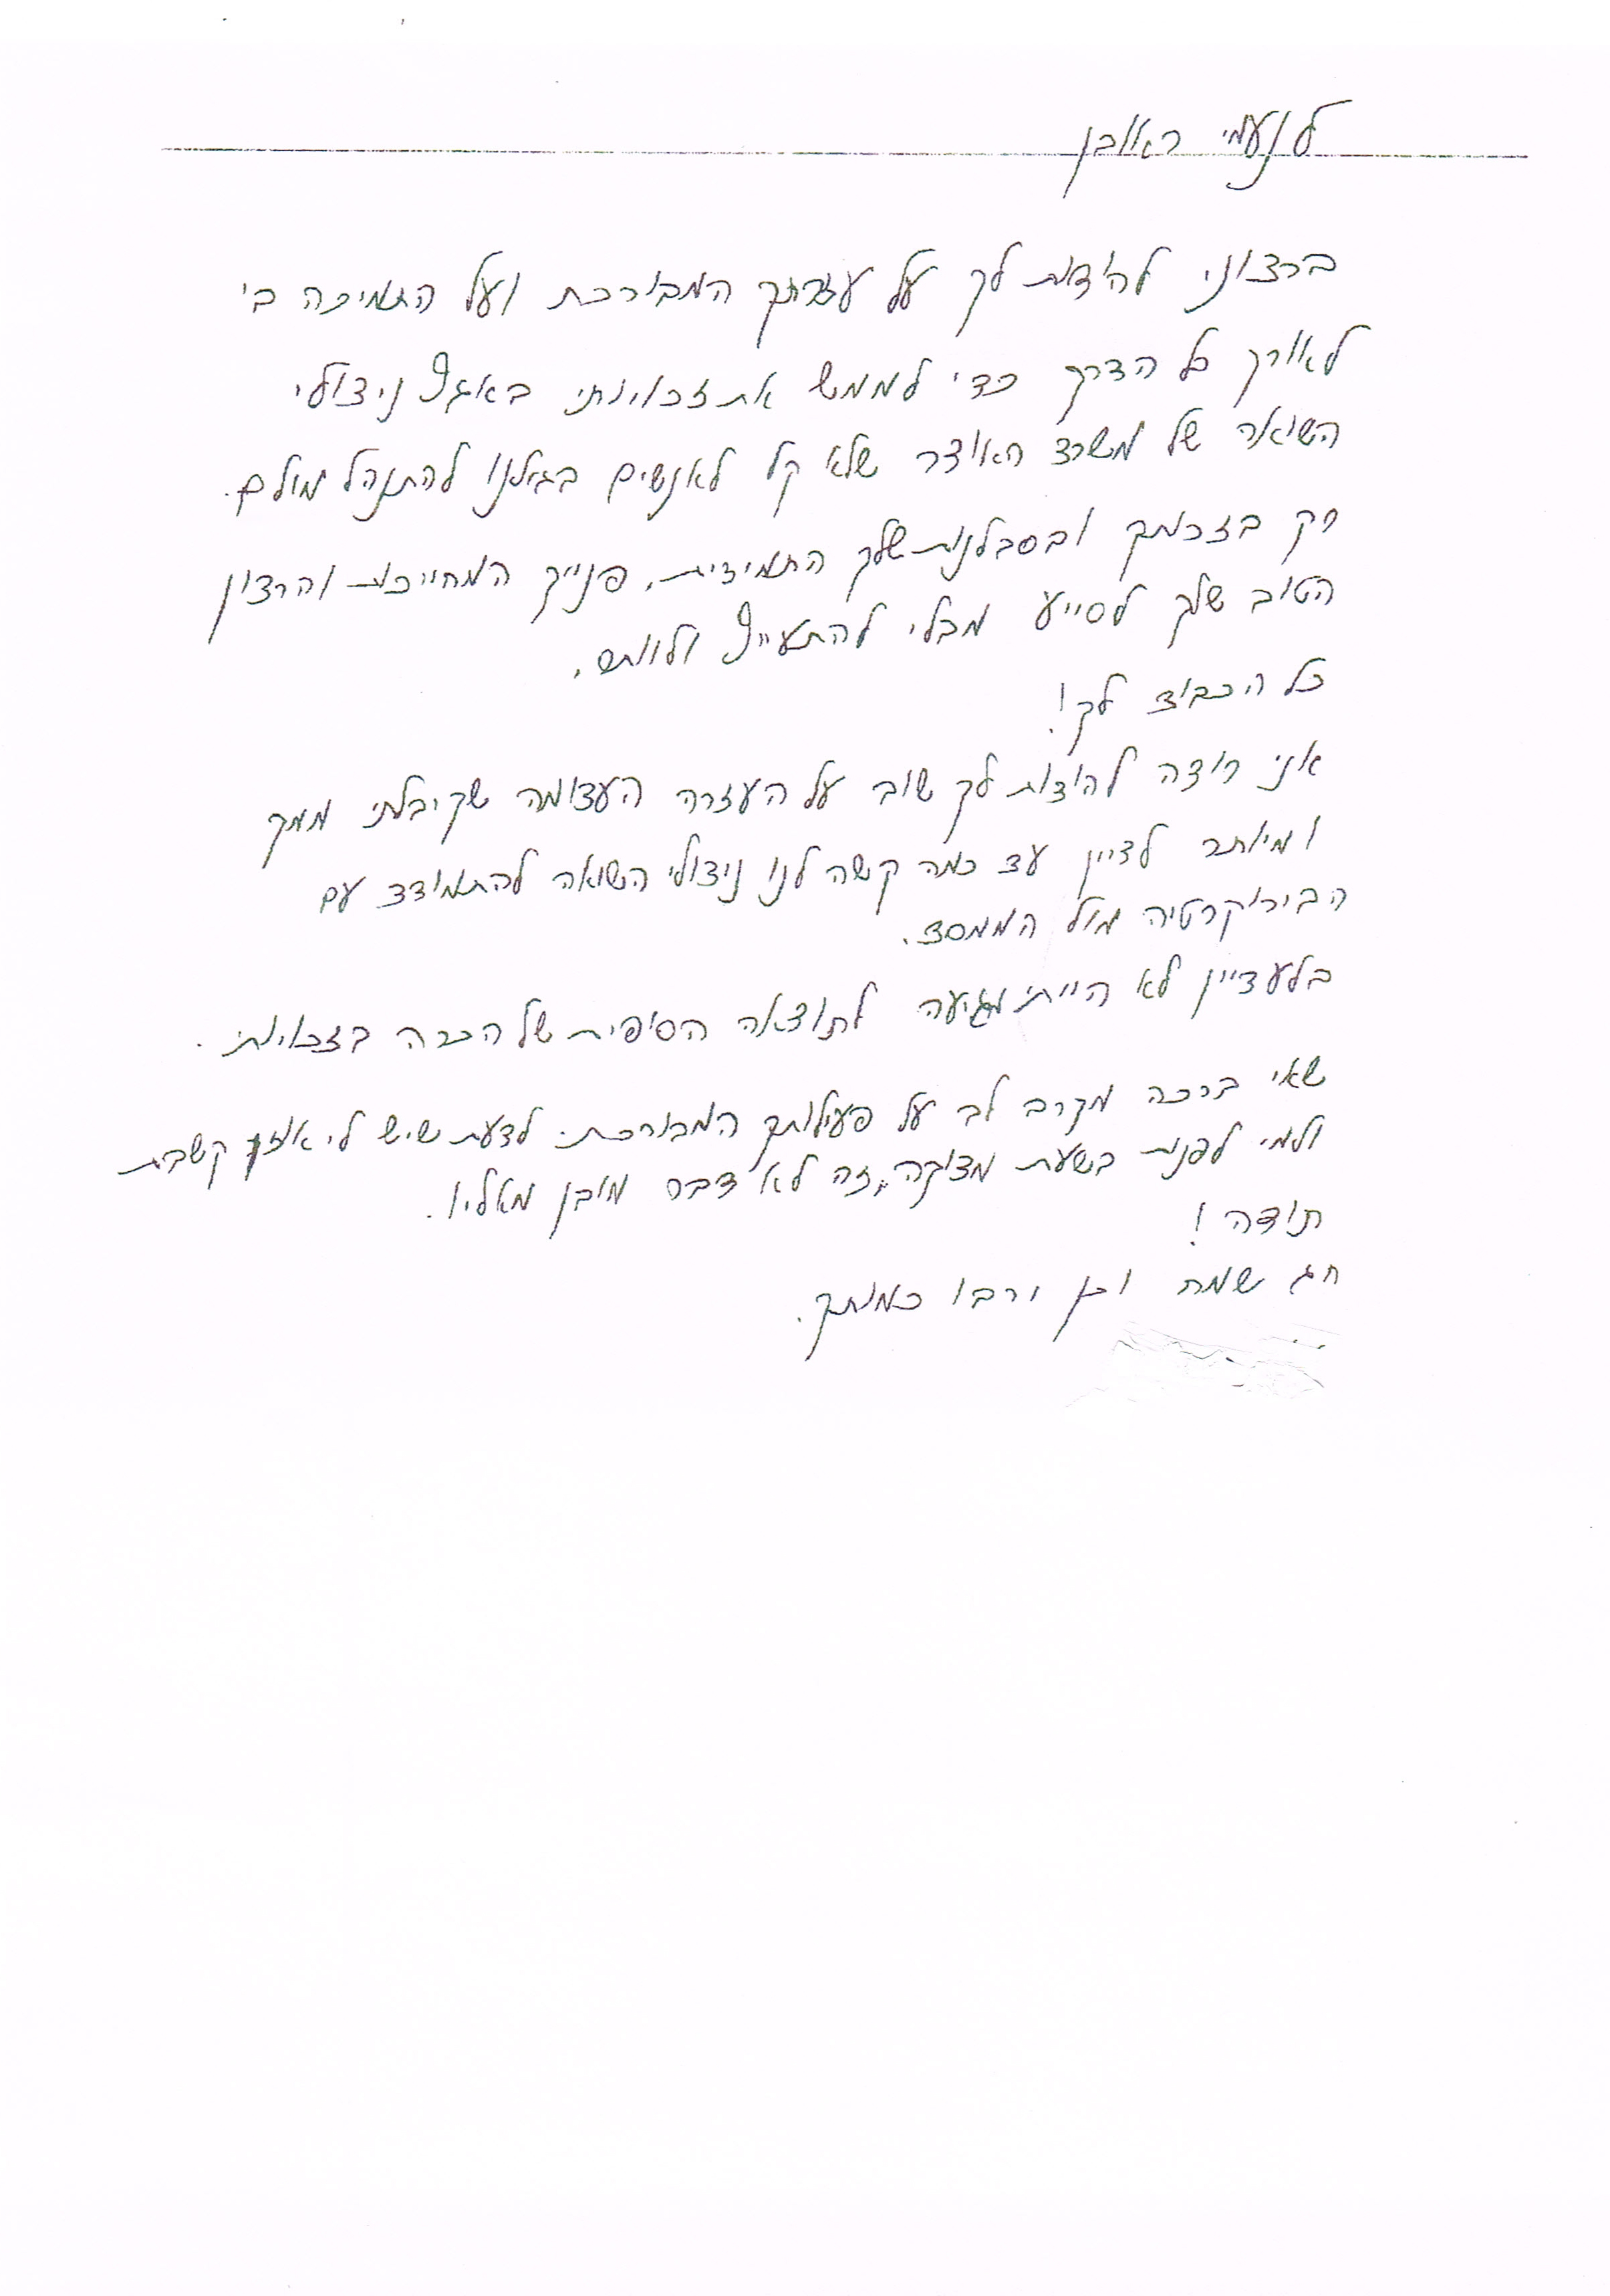 מכתבי תודה אביב לניצולי השואה